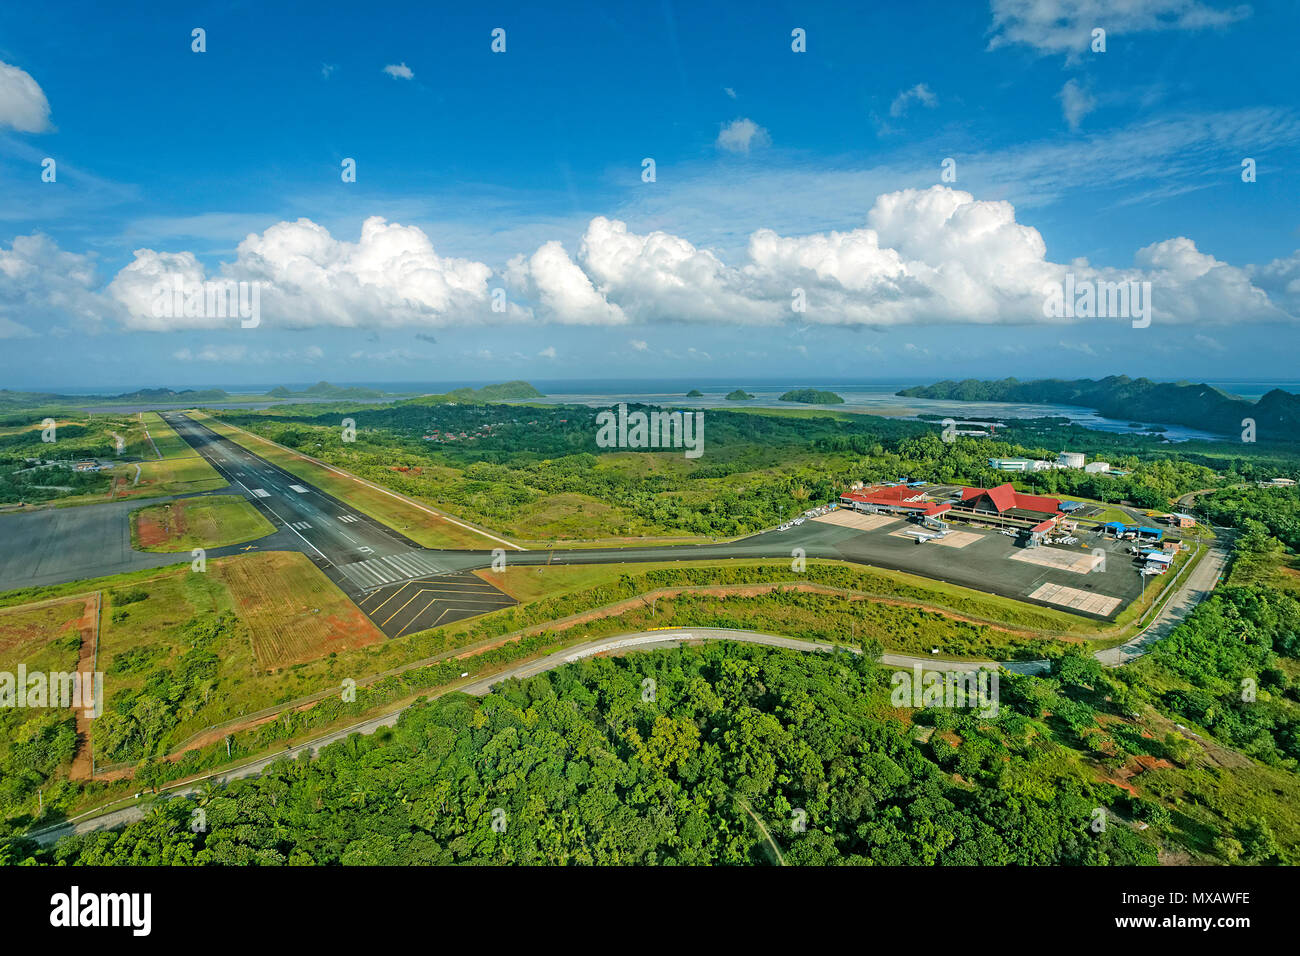 Luftaufnahme vom Flughafen und Landebahn von Palau, Mikronesien, Asien | Flughafen und Start- und Landebahn von Palau, Luftaufnahme, Mikronesien, Asien Stockfoto